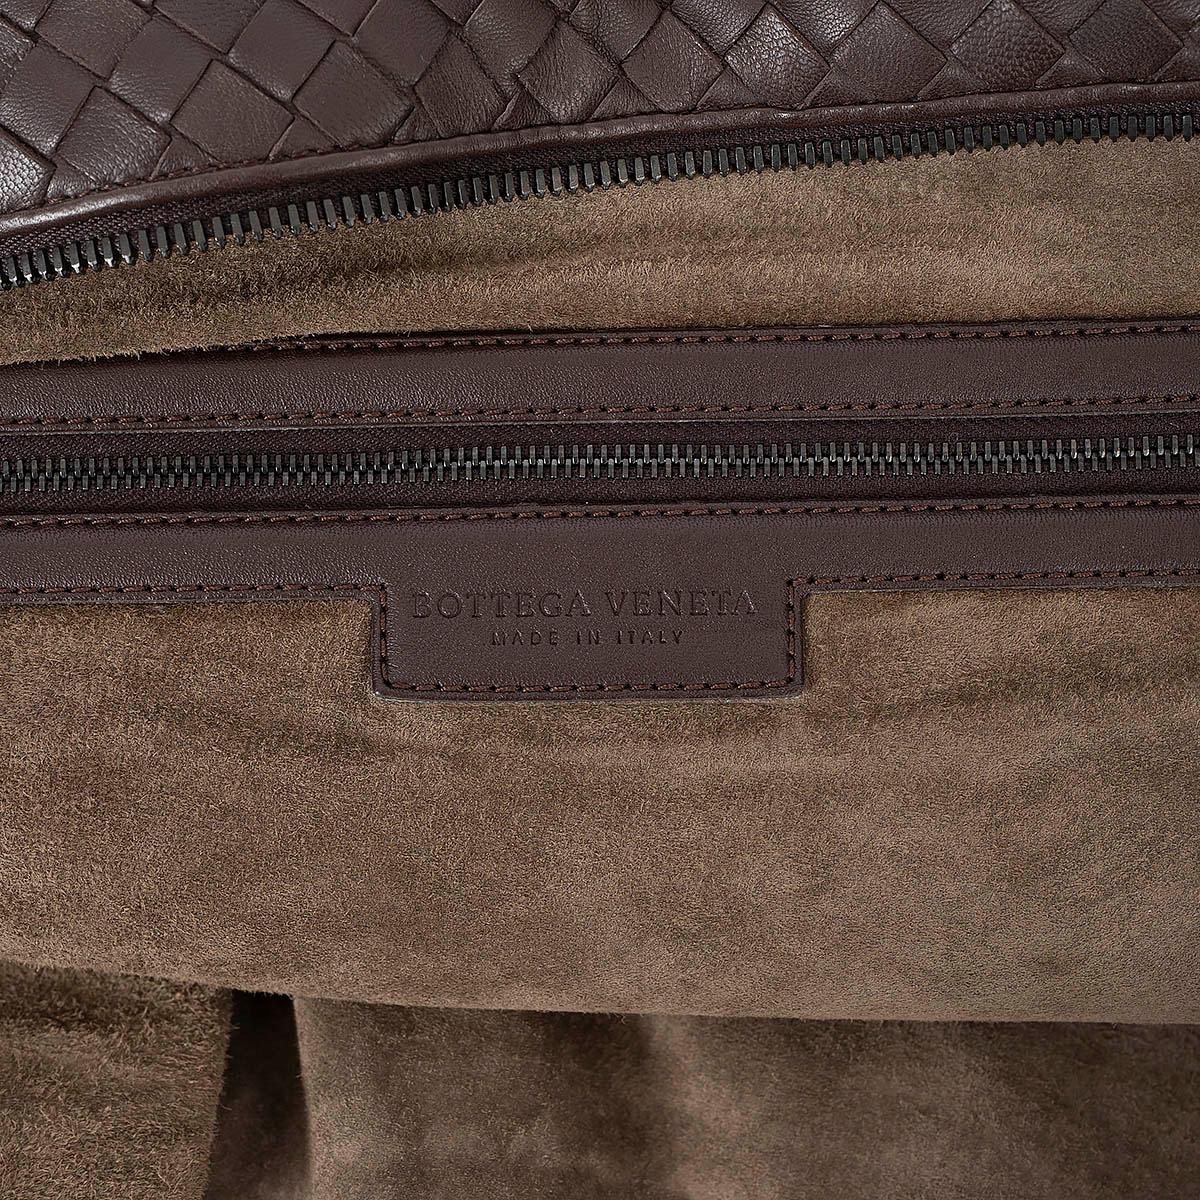 BOTTEGA VENETA Ebano brown leather INTRECCIATO MAXI CONVERTIBLE TOTE Bag For Sale 4